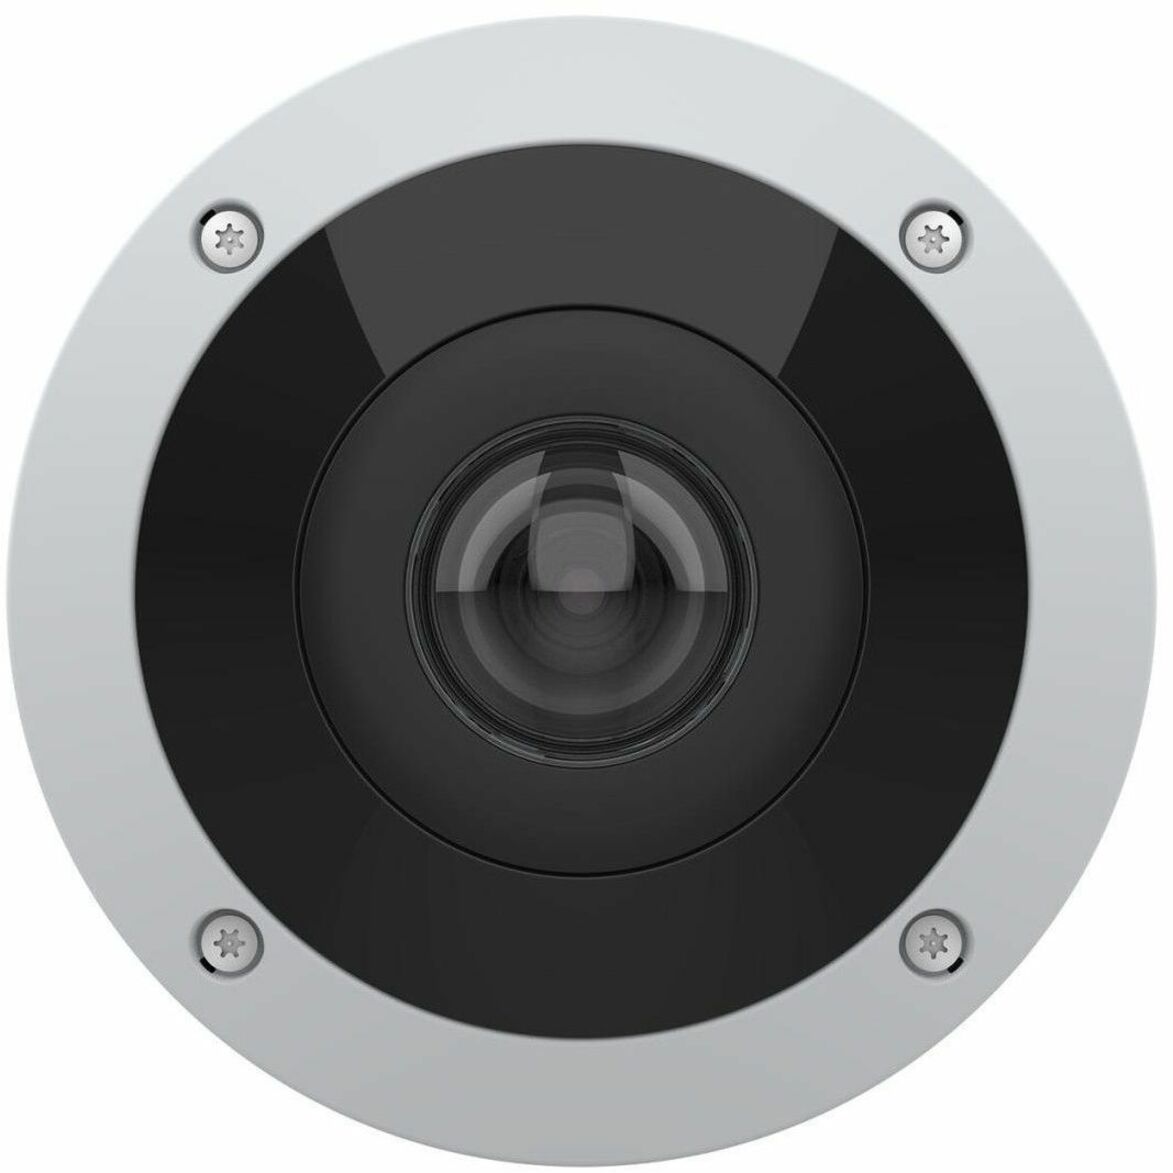 AXIS 02510-001 AXIS M4317-PLVE Caméra Panoramique 6 Mégapixels Extérieure Champ de Vision de 182° Vision Nocturne PoE